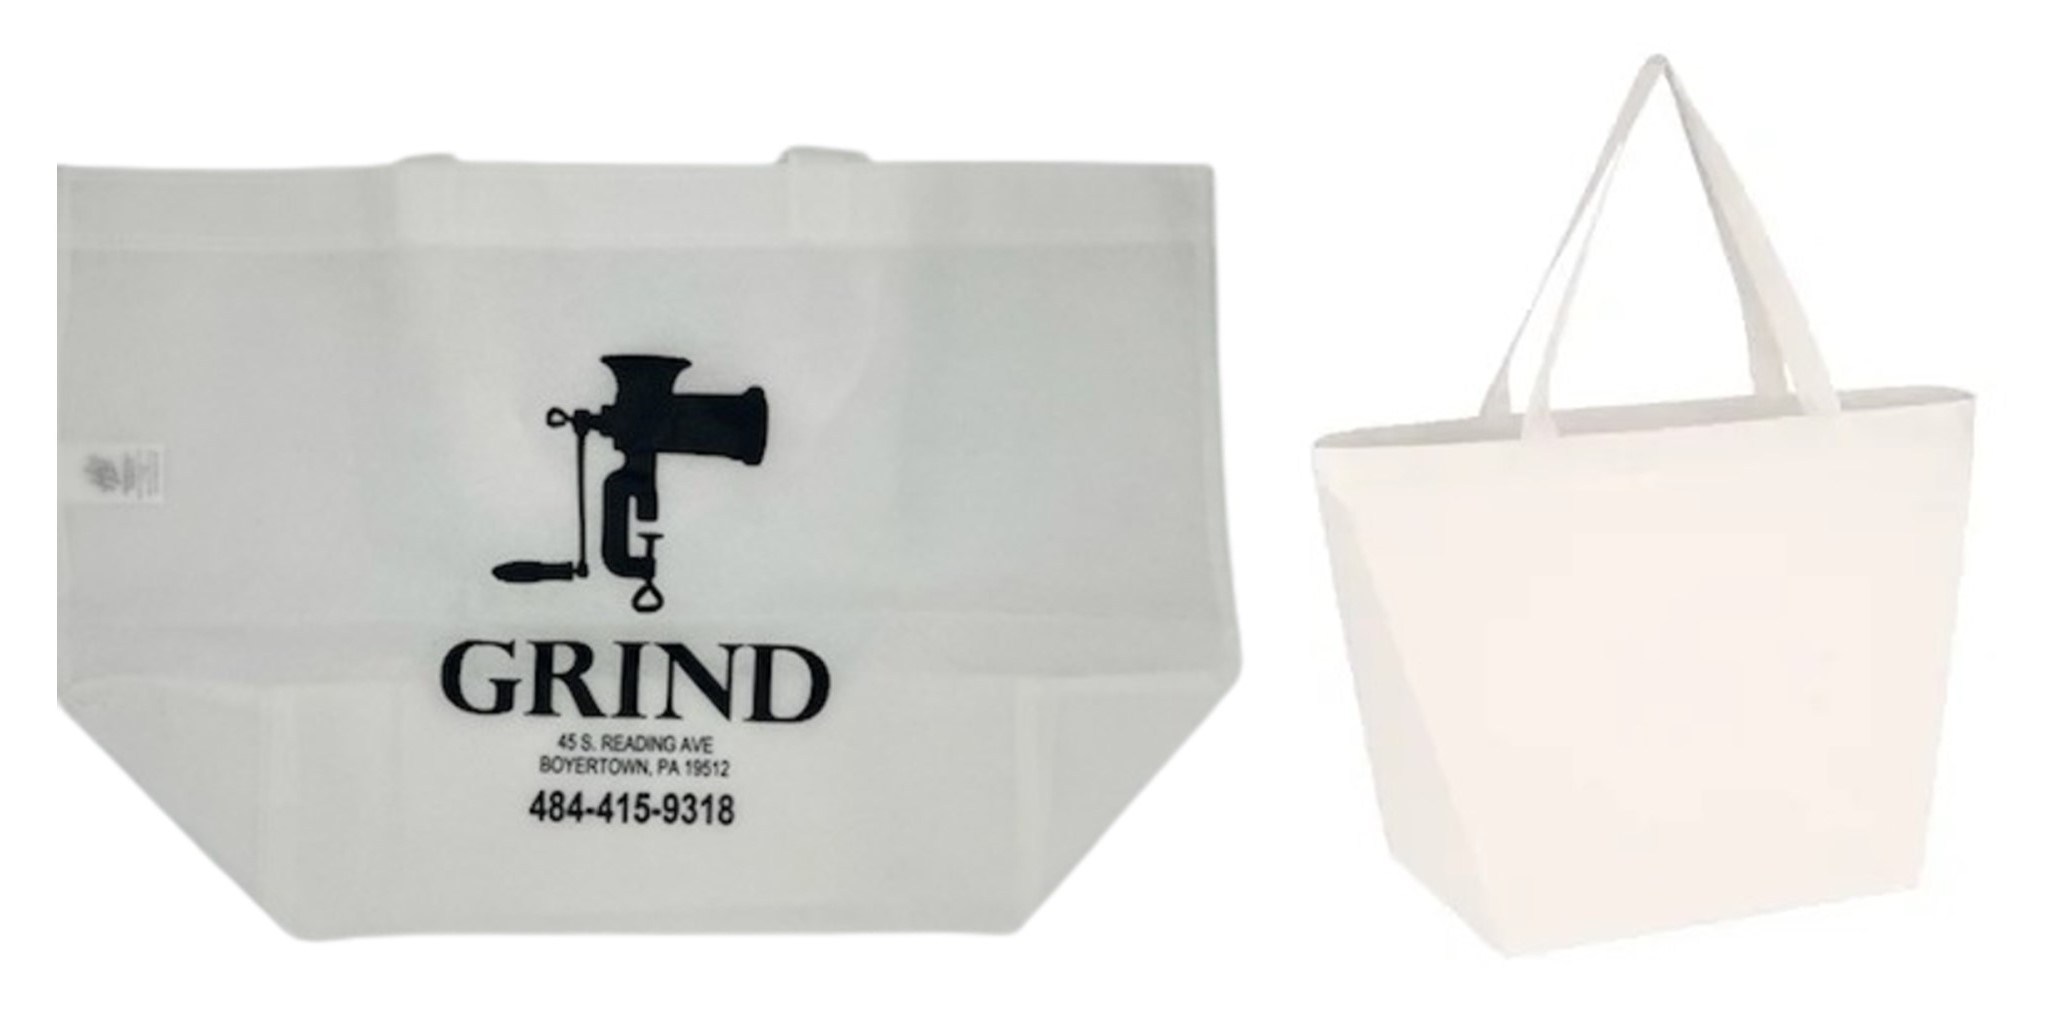 Grind
ECO Bag
Shopping Bag
